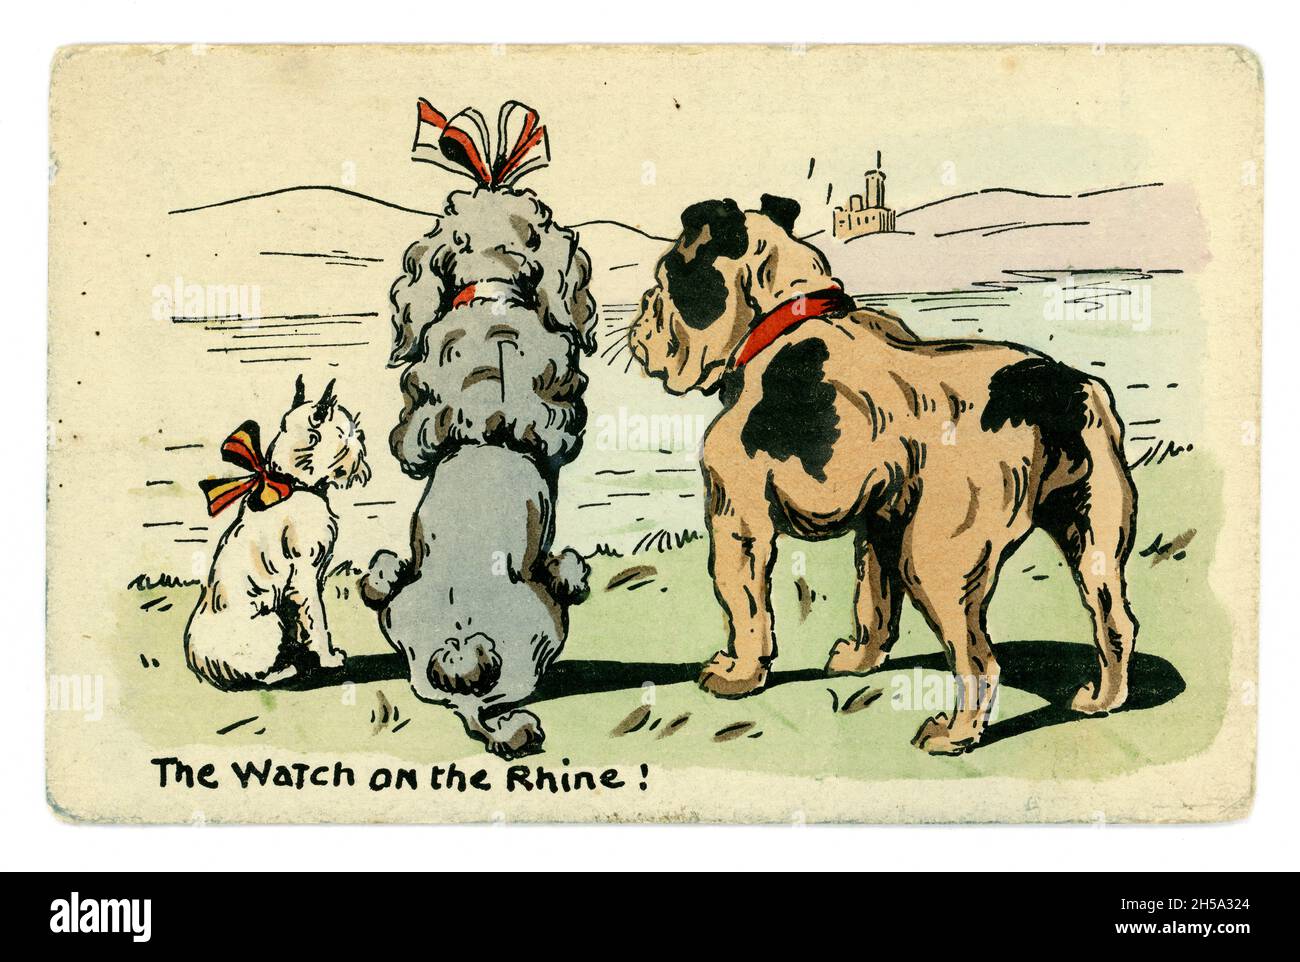 Originalpostkarte des 1. Weltkrieges von 3 Hunden, die die Verbündeten repräsentieren - Frankreich Belgien, Großbritannien. Die Uhr am Rhein! War eine deutsche patriotische Hymne. Karte veröffentlicht von E.W. Savory Ltd. Bristol, Großbritannien, um 1914 Stockfoto